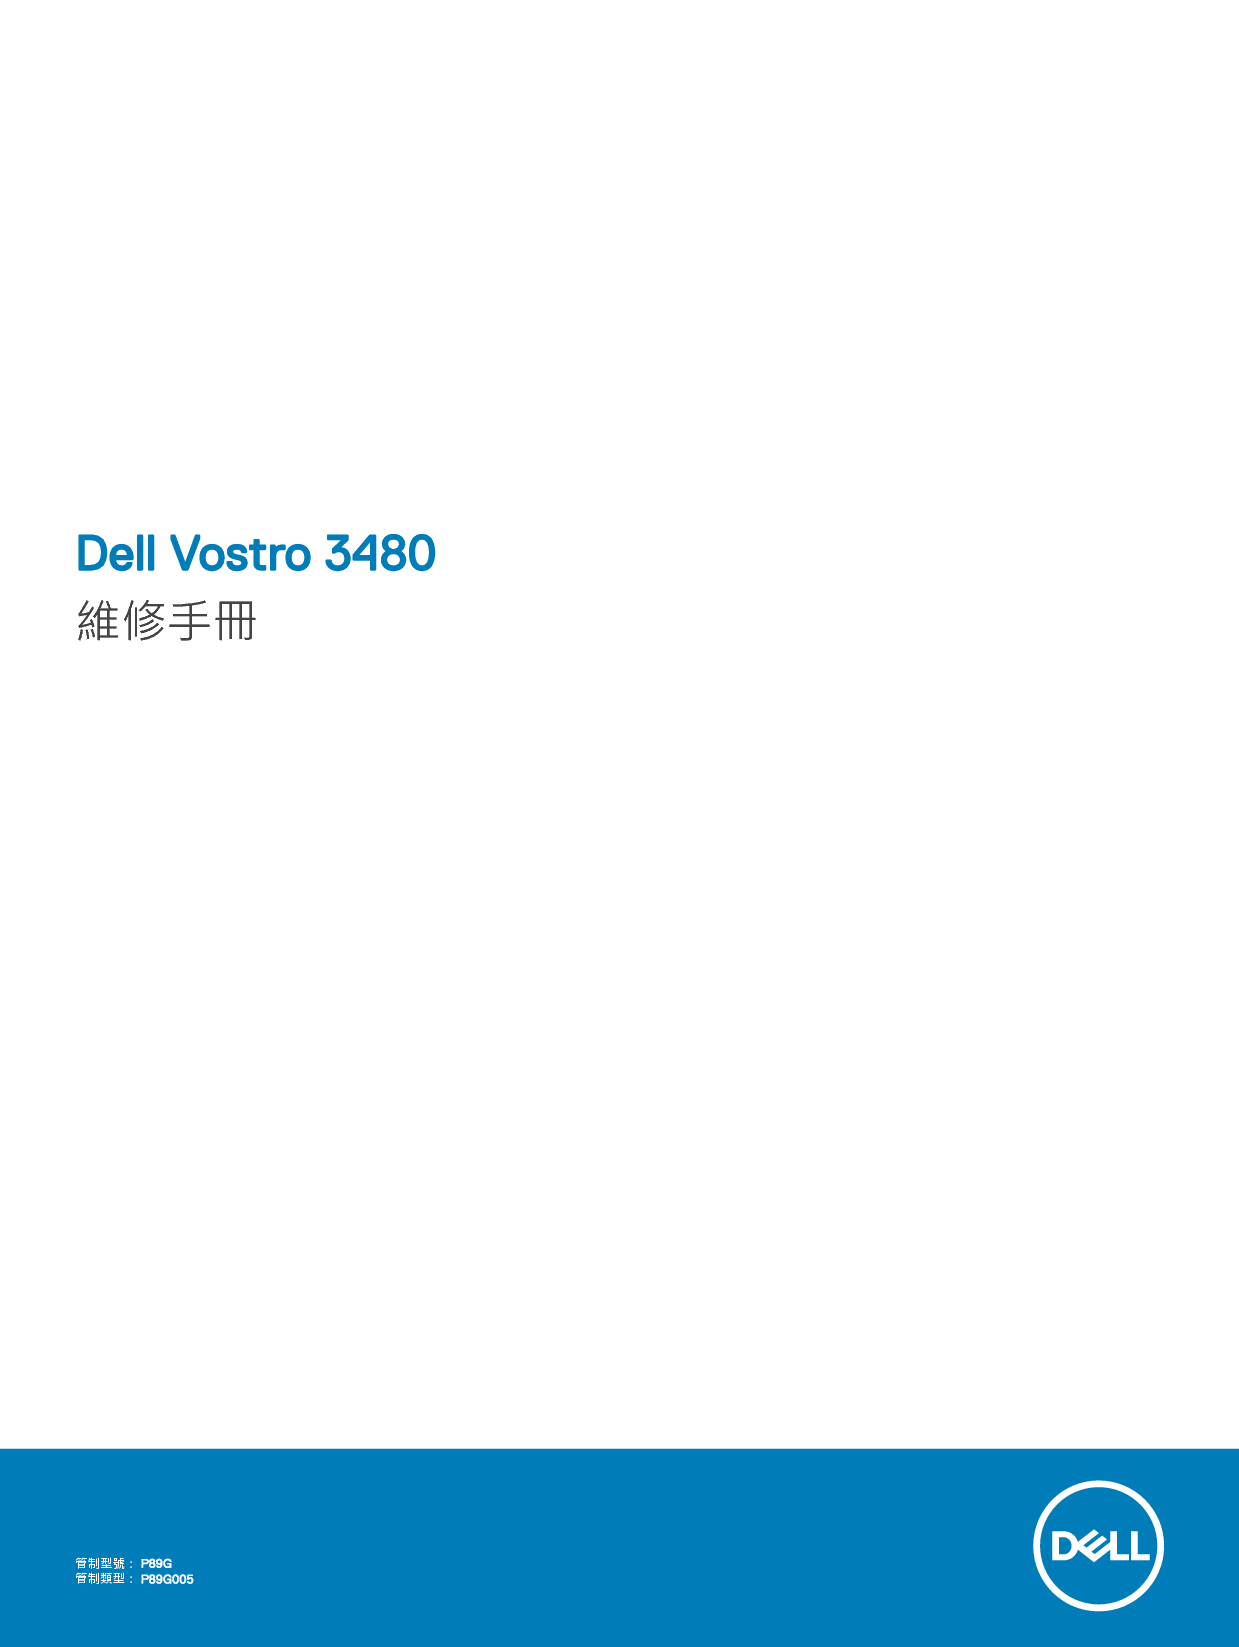 戴尔 Dell Vostro 3480 繁体 用户手册 封面